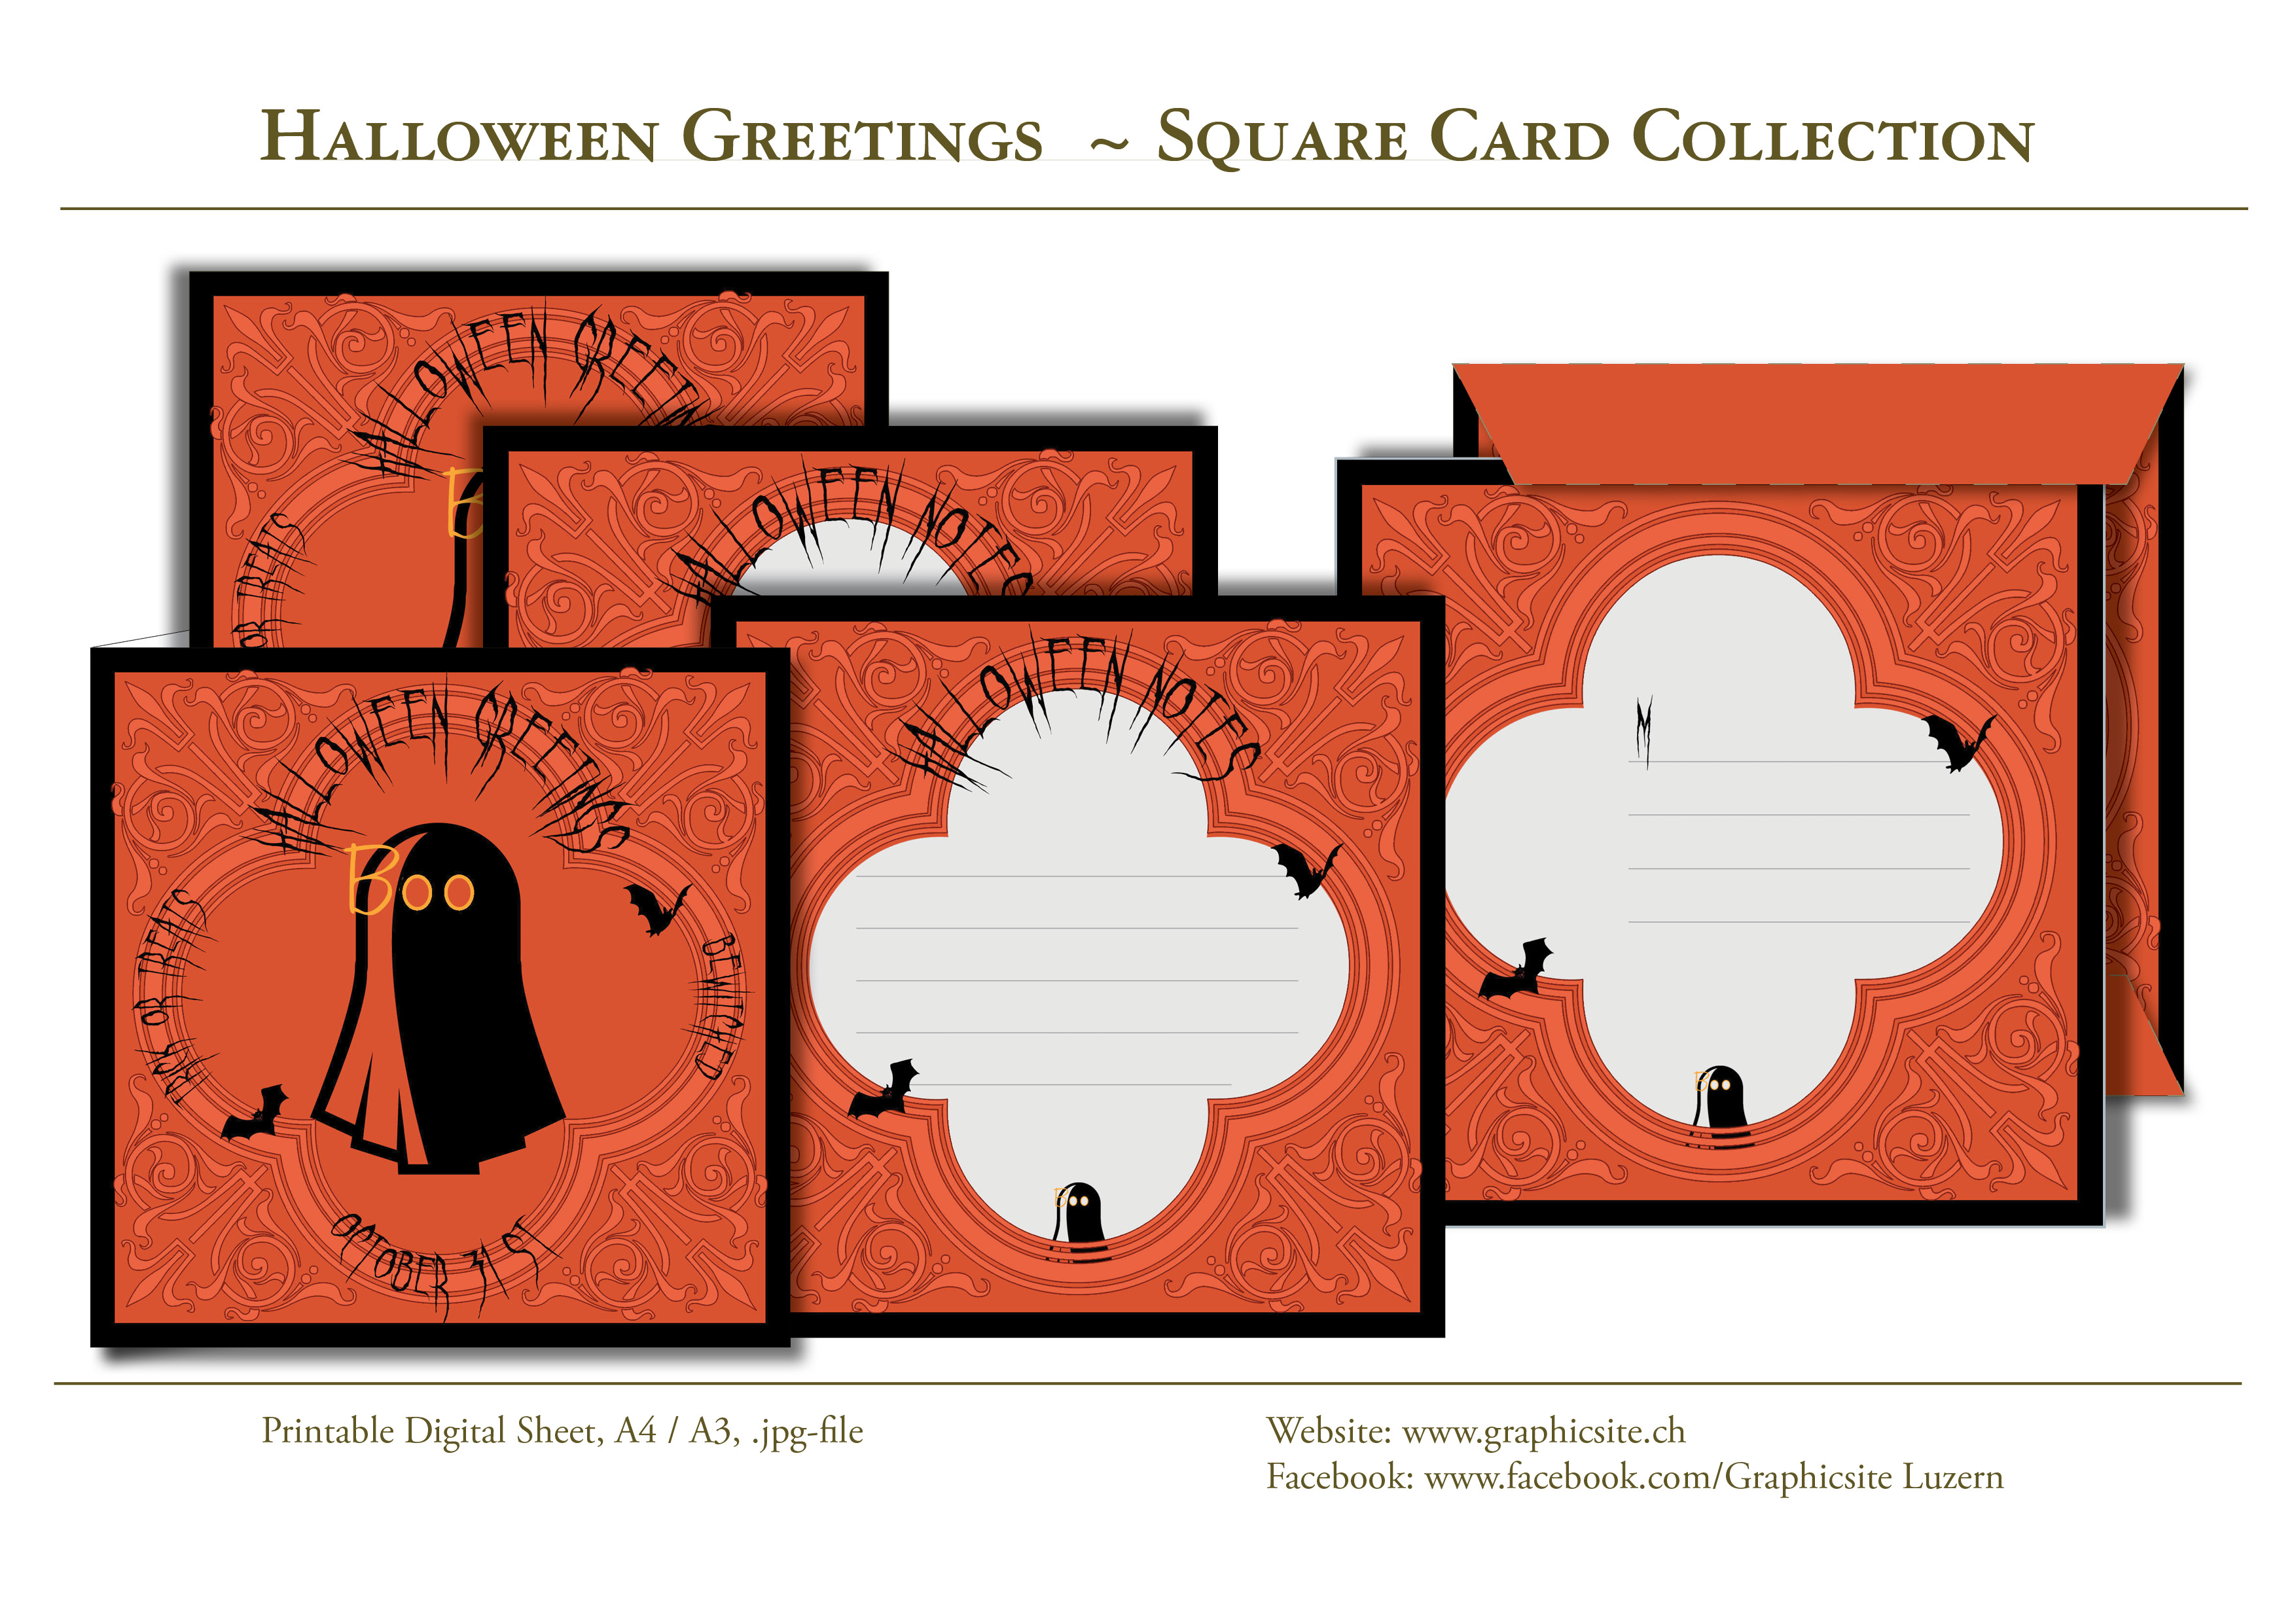 Karten selber drucken - Halloween 2 - Kartenkollektion - DIN A6 - Halloween - Gespenst - Graphic Design Luzern, Schweiz